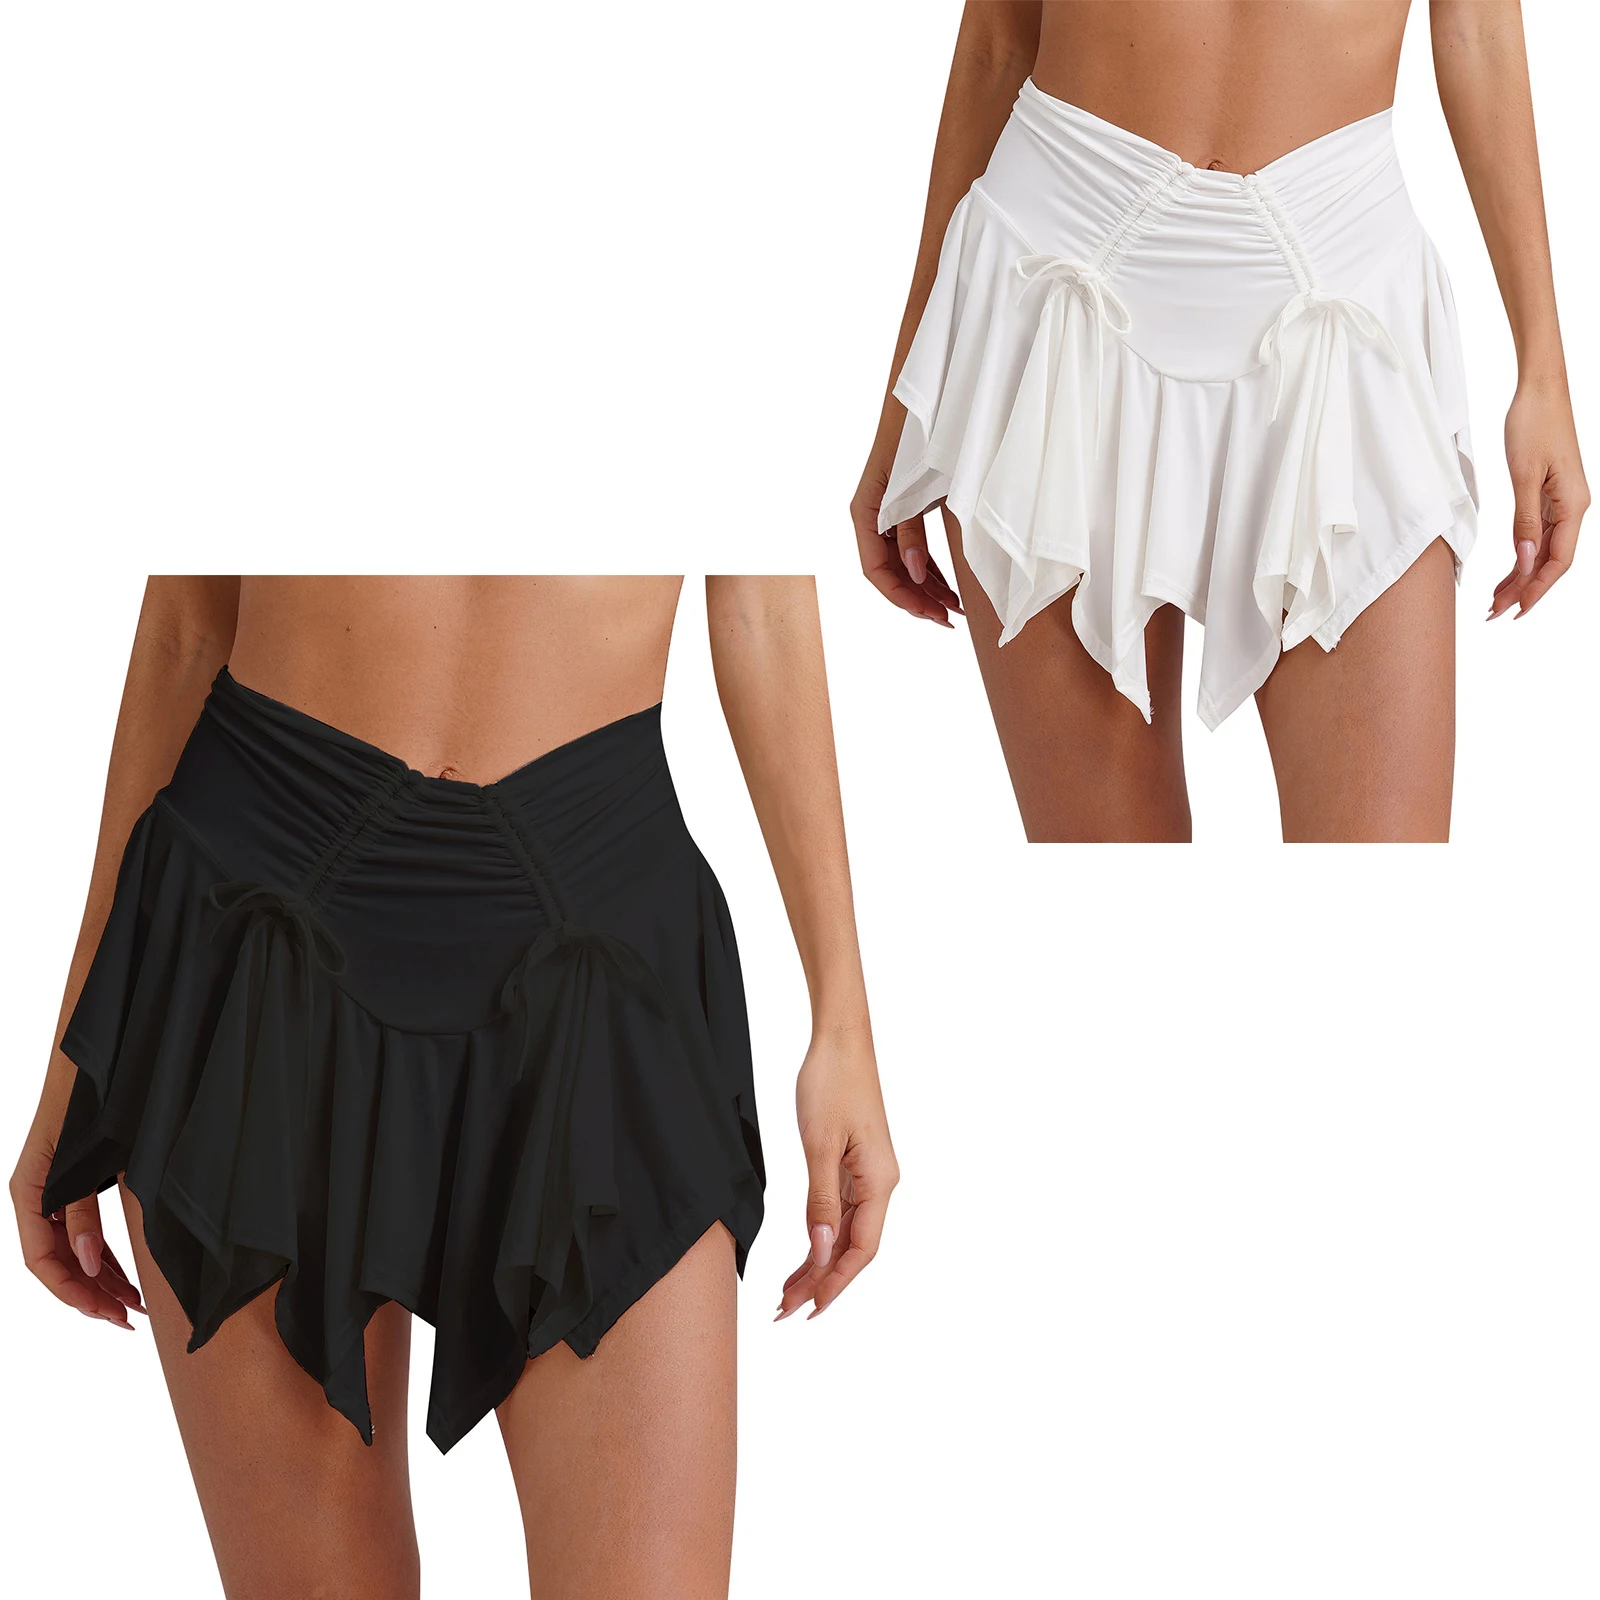 Женская готическая мини-юбка в стиле панк, плиссированная юбка с асимметричным подолом и рюшами на завязках и с защитными трусами, юбка для уличного образа